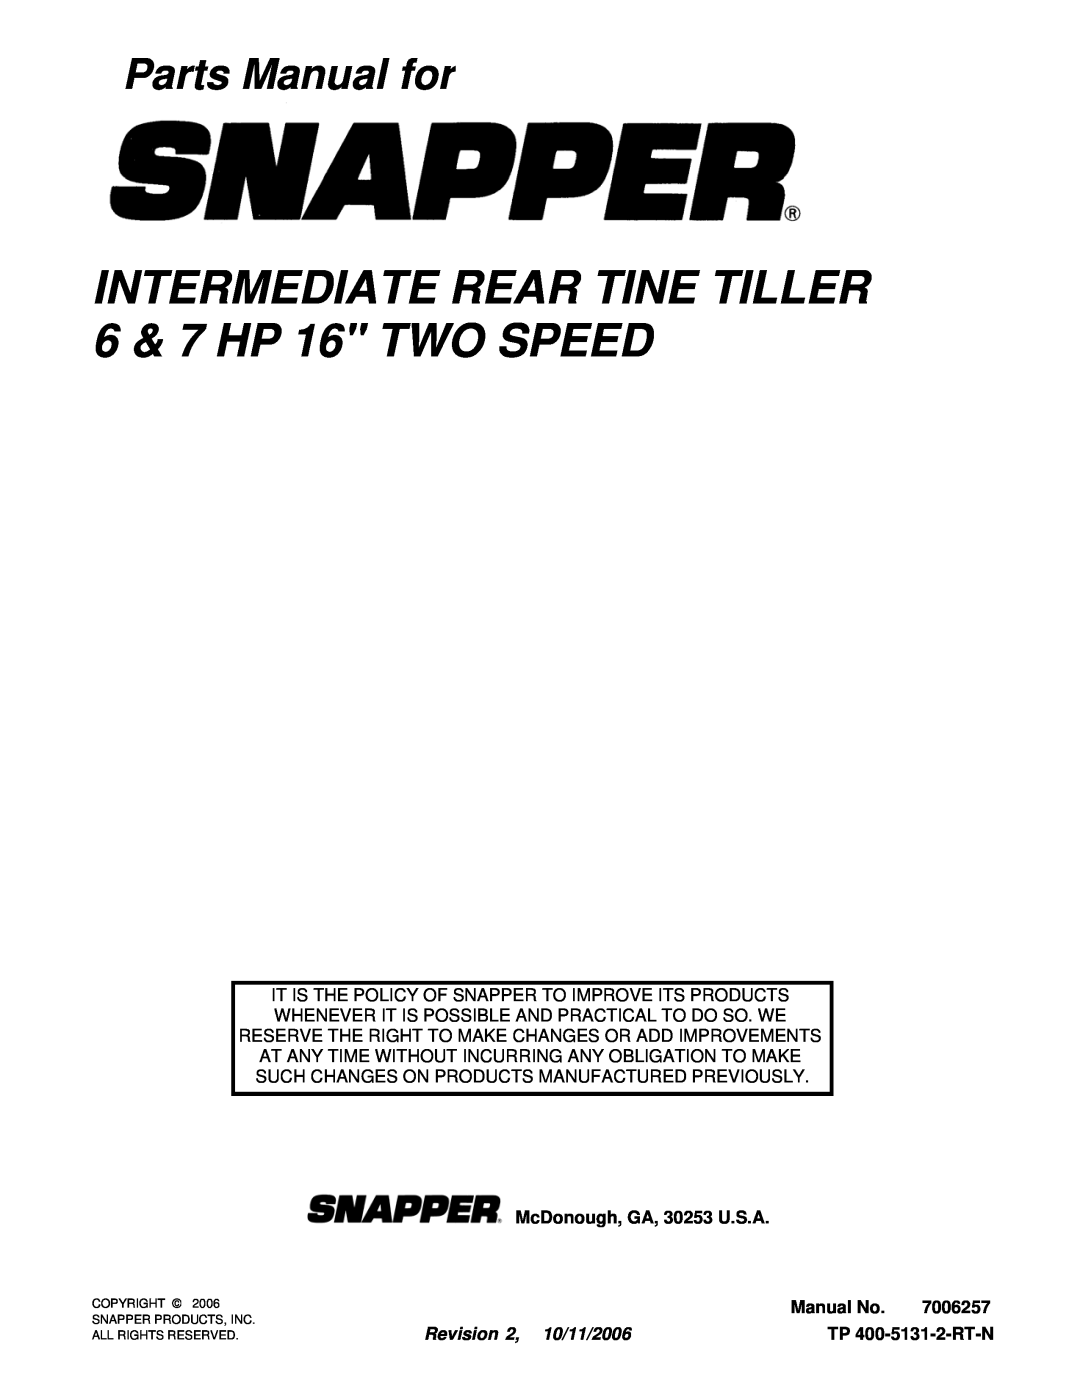 Snapper 6016RT, 7016RT manual Parts Manual for, McDonough, GA, 30253 U.S.A, Manual No, 7006257, Revision 2, 10/11/2006 